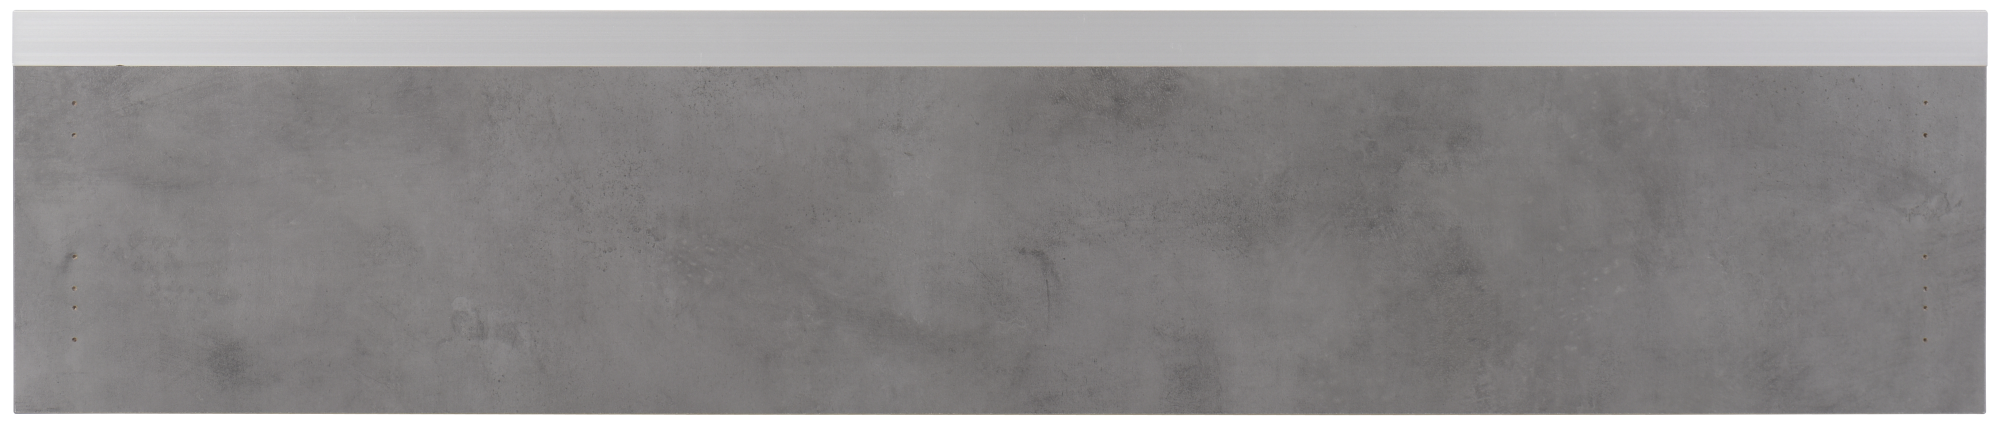 Frente para cajón mikonos cemento oscuro 119,7x25,3 cm